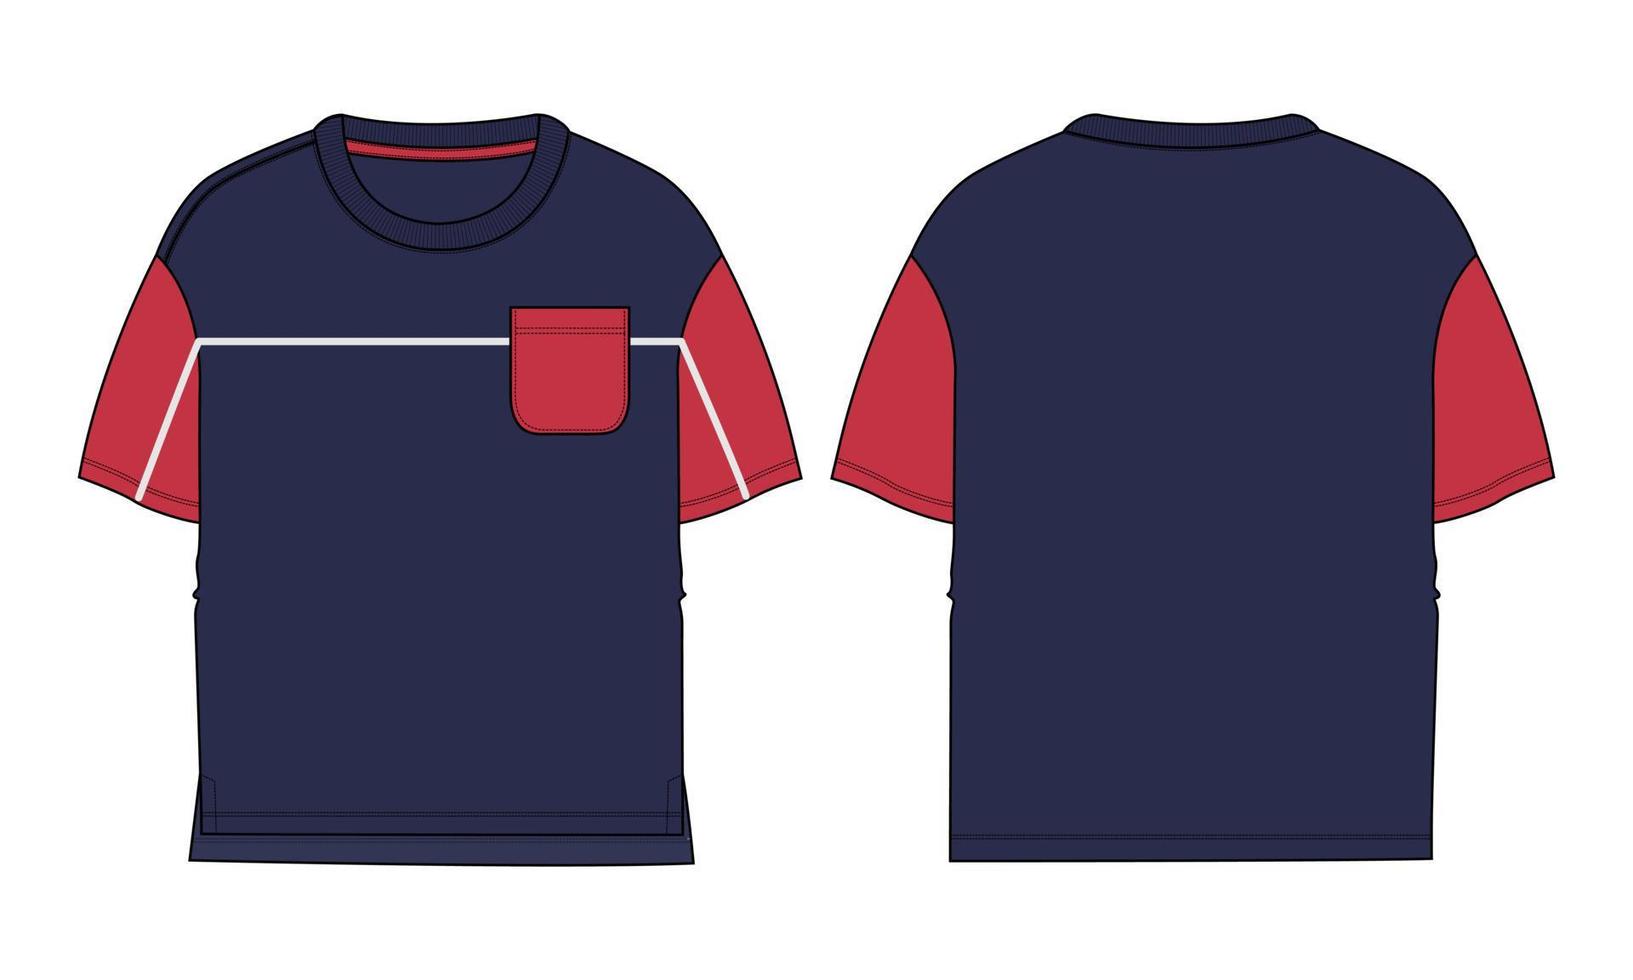 zweifarbige marine, rote farbe kurzarm basic t-shirt insgesamt technische mode flache skizze vektor illustration vorlage vorder- und rückansichten. grundlegendes kleidungsdesign-modell für kinder, jungen